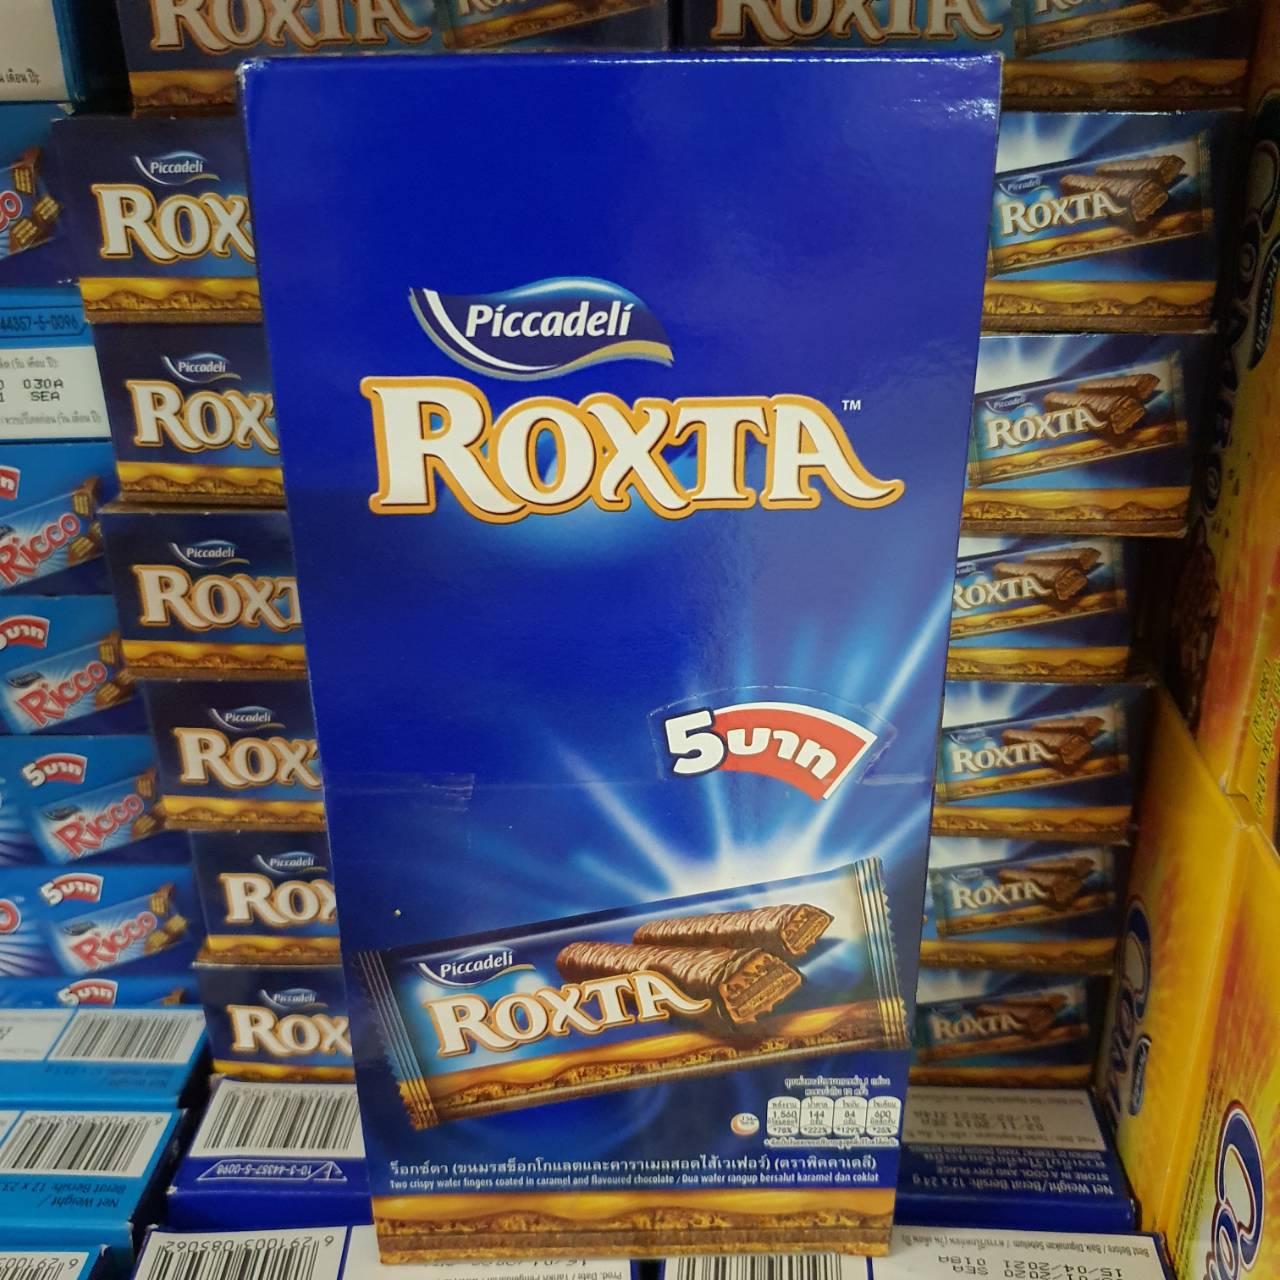 Roxta ร็อกซ์ตา ขนมรสช็อคโกแลตและราคาเมลสอดไส้เวฟเฟอร์ (ตราพิคคาเดลี) 1 กล่อง 12 ชิ้น